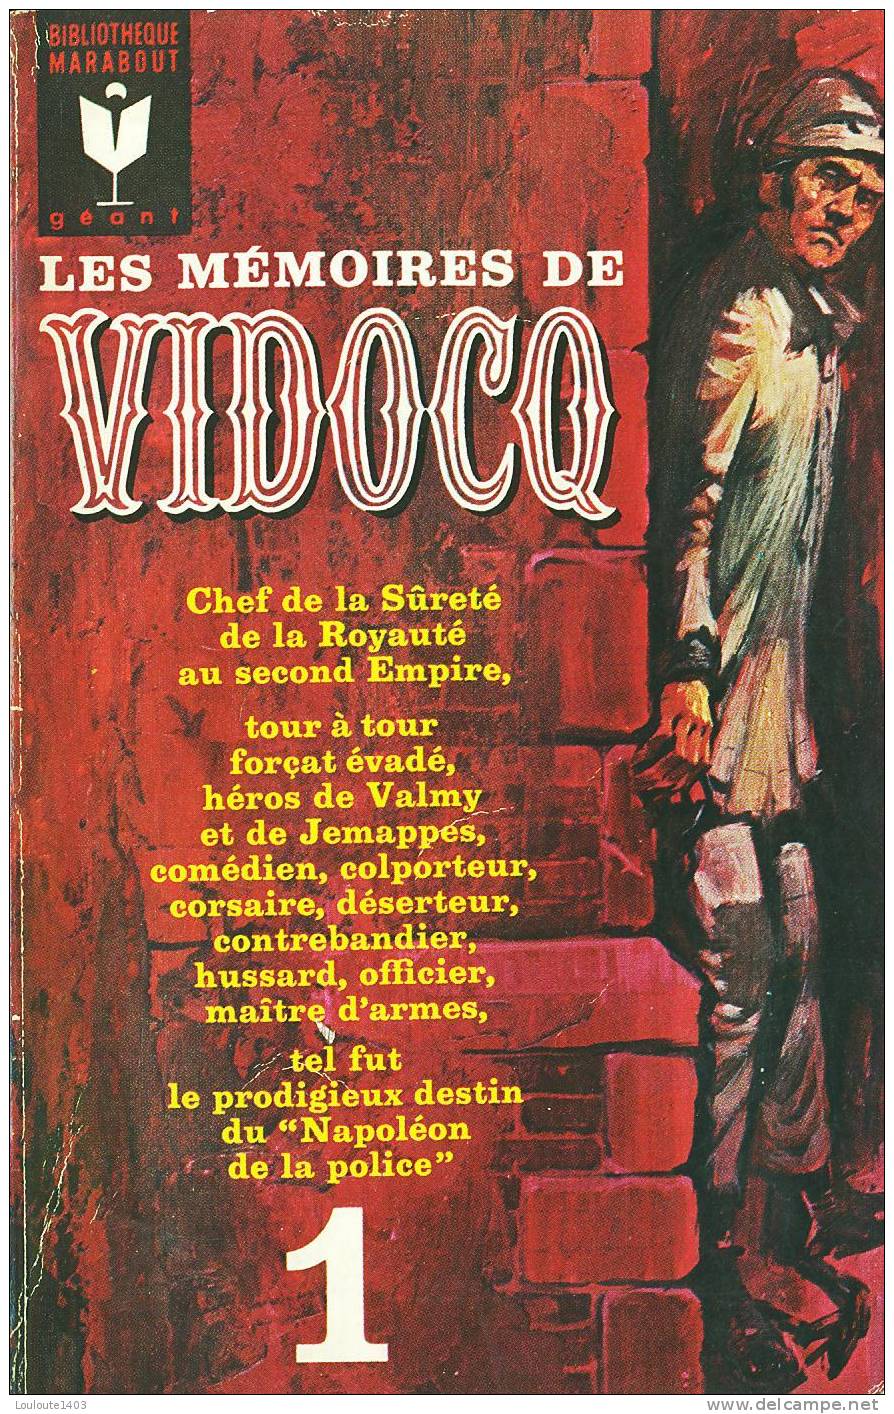 Les Mémoires de Vidocq T1, Marabout (1966)